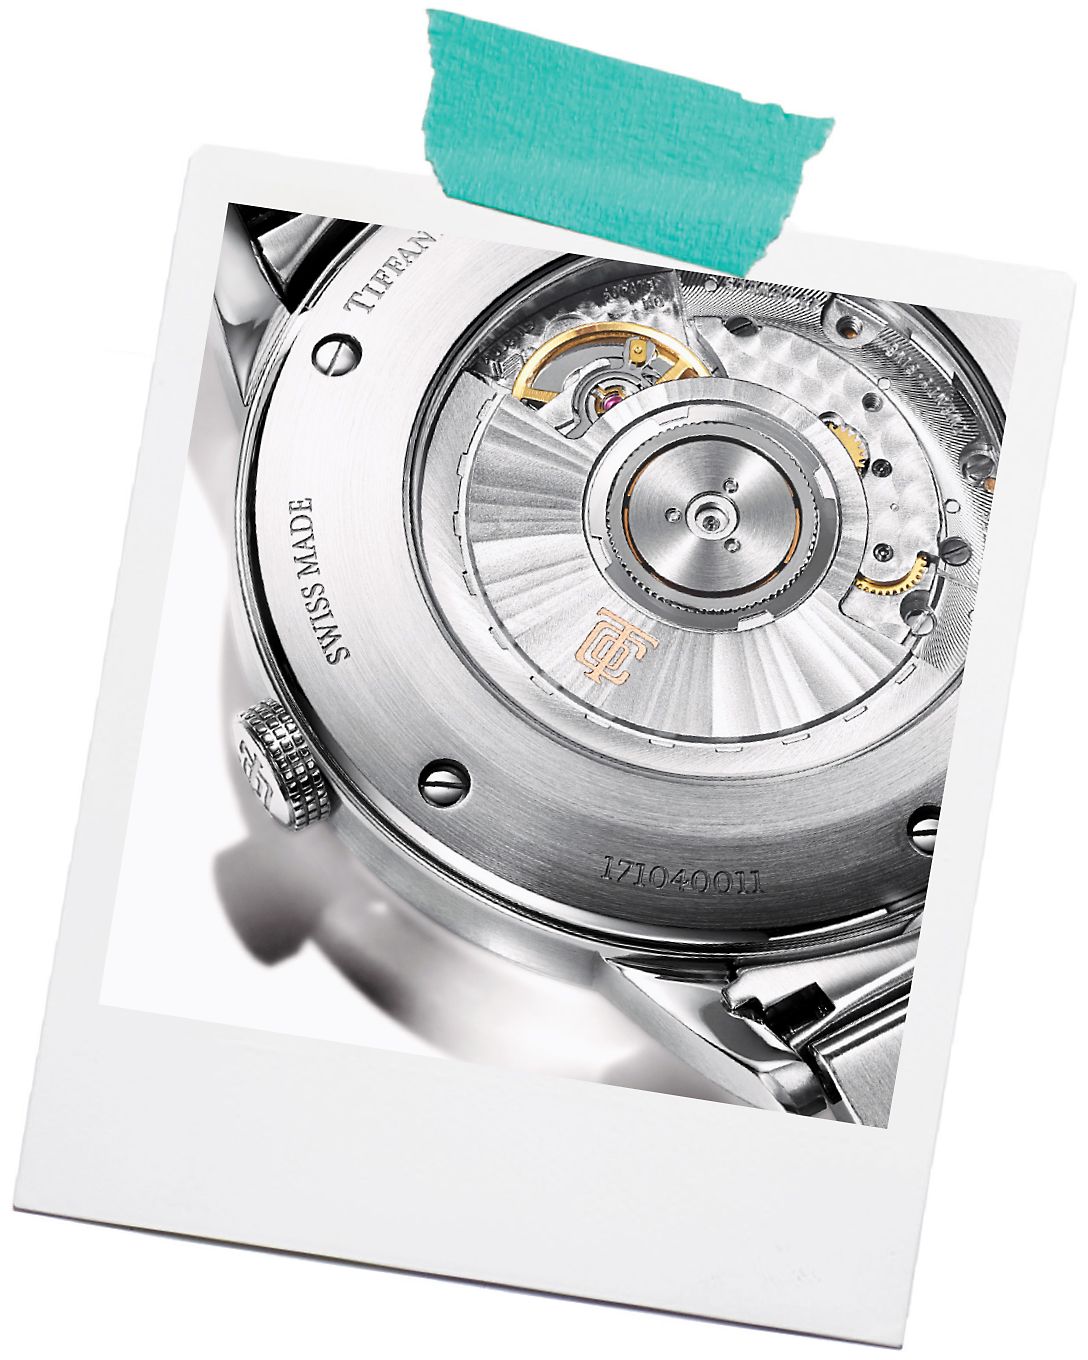 Descubra os cuidados com relógios Tiffany & Co.